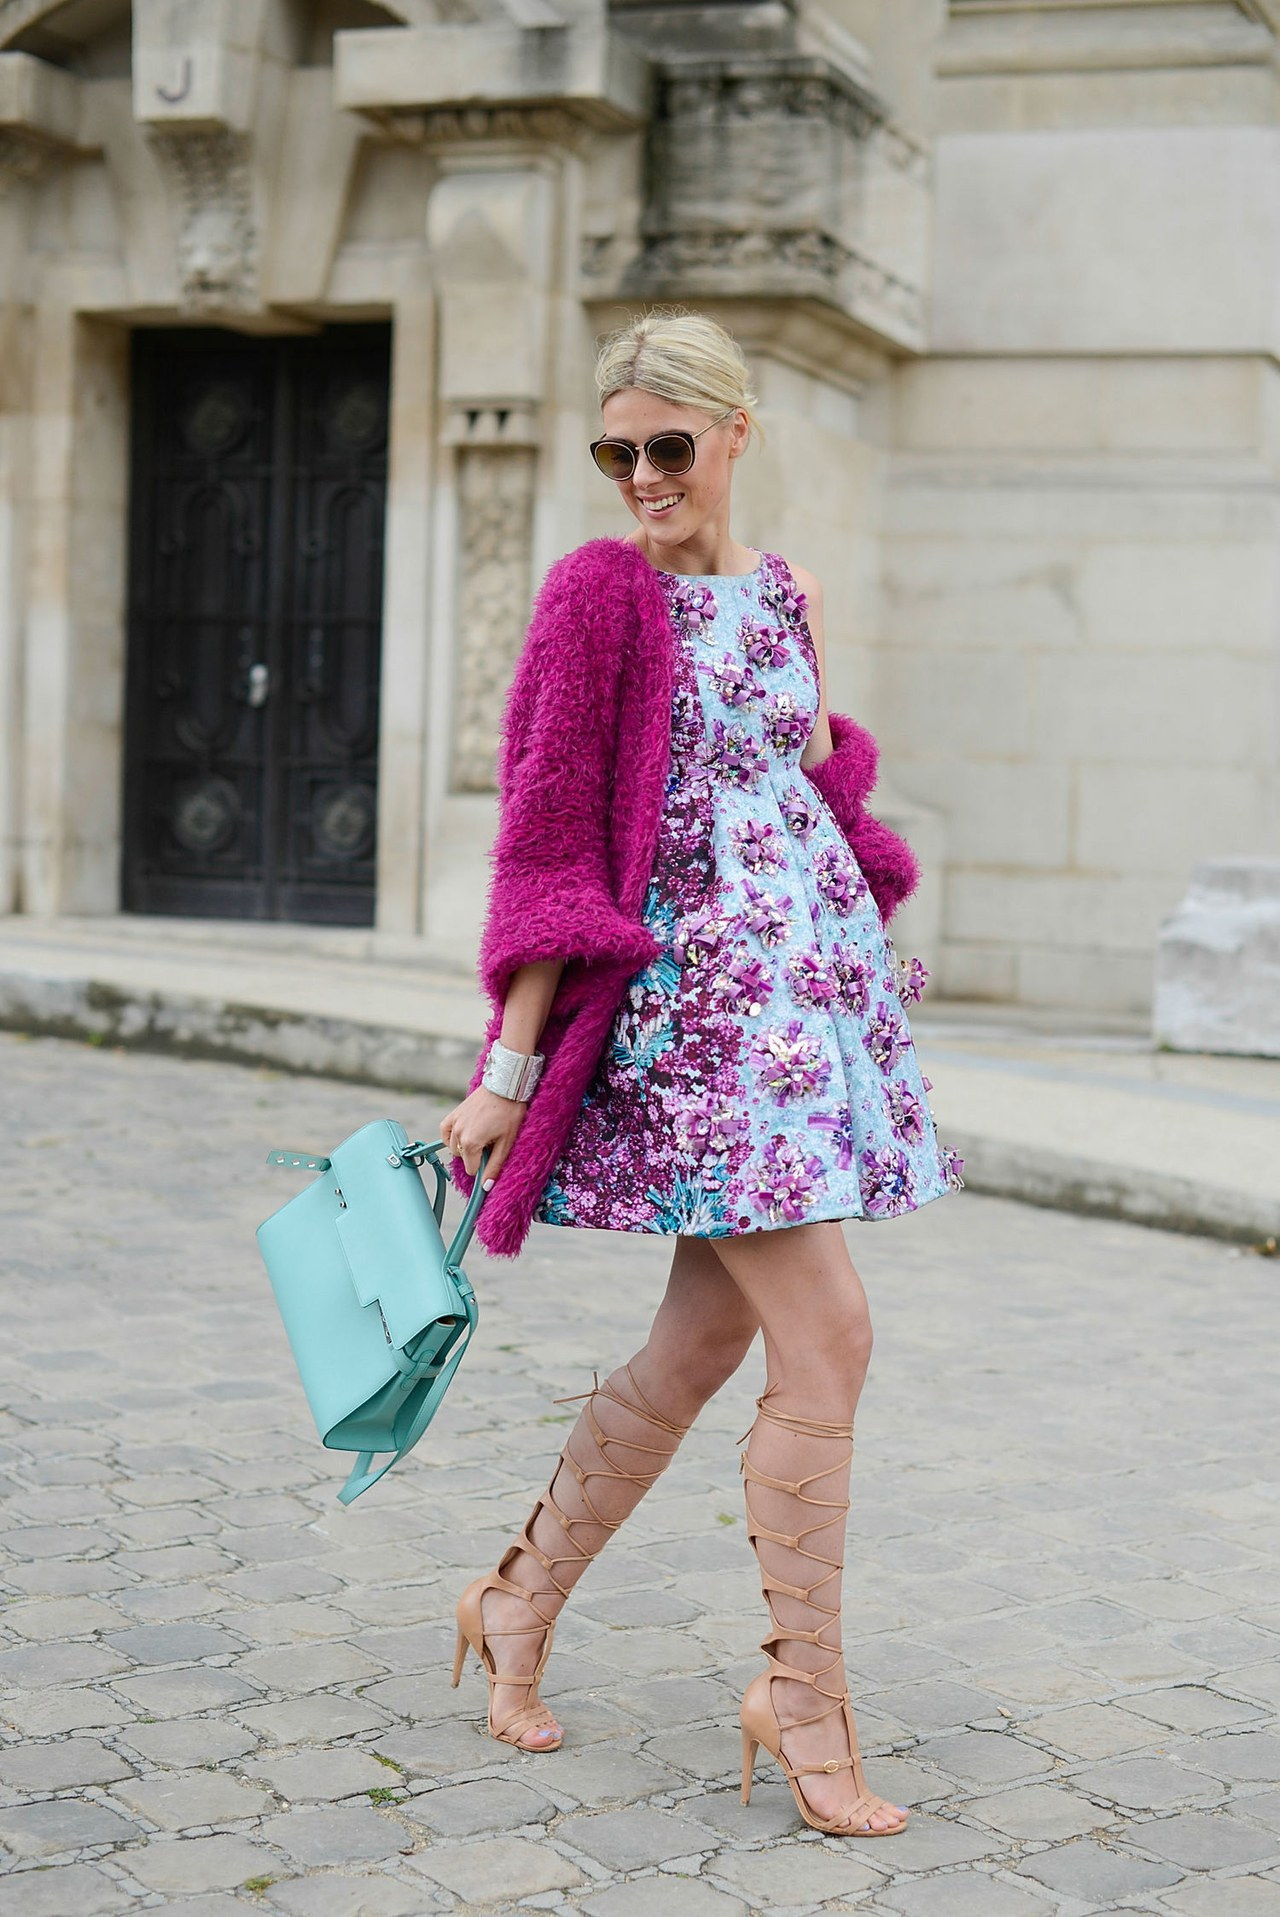 صوفي valkiers mary katrantzou floral dress paris street style